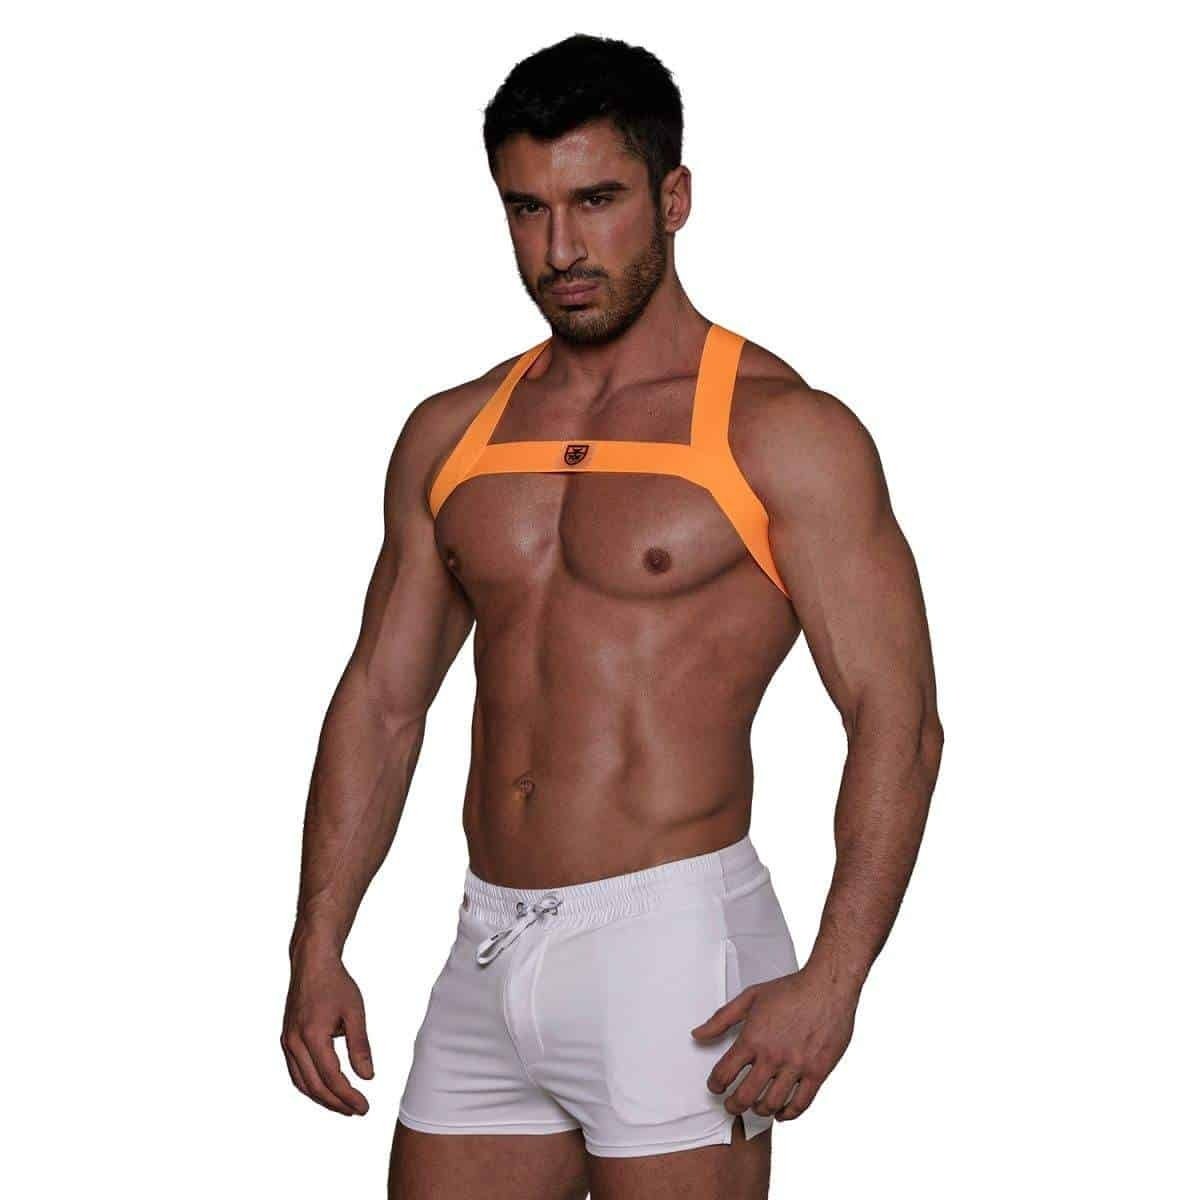 TOF Paris Fetish Elastic Harness - Neon Orange